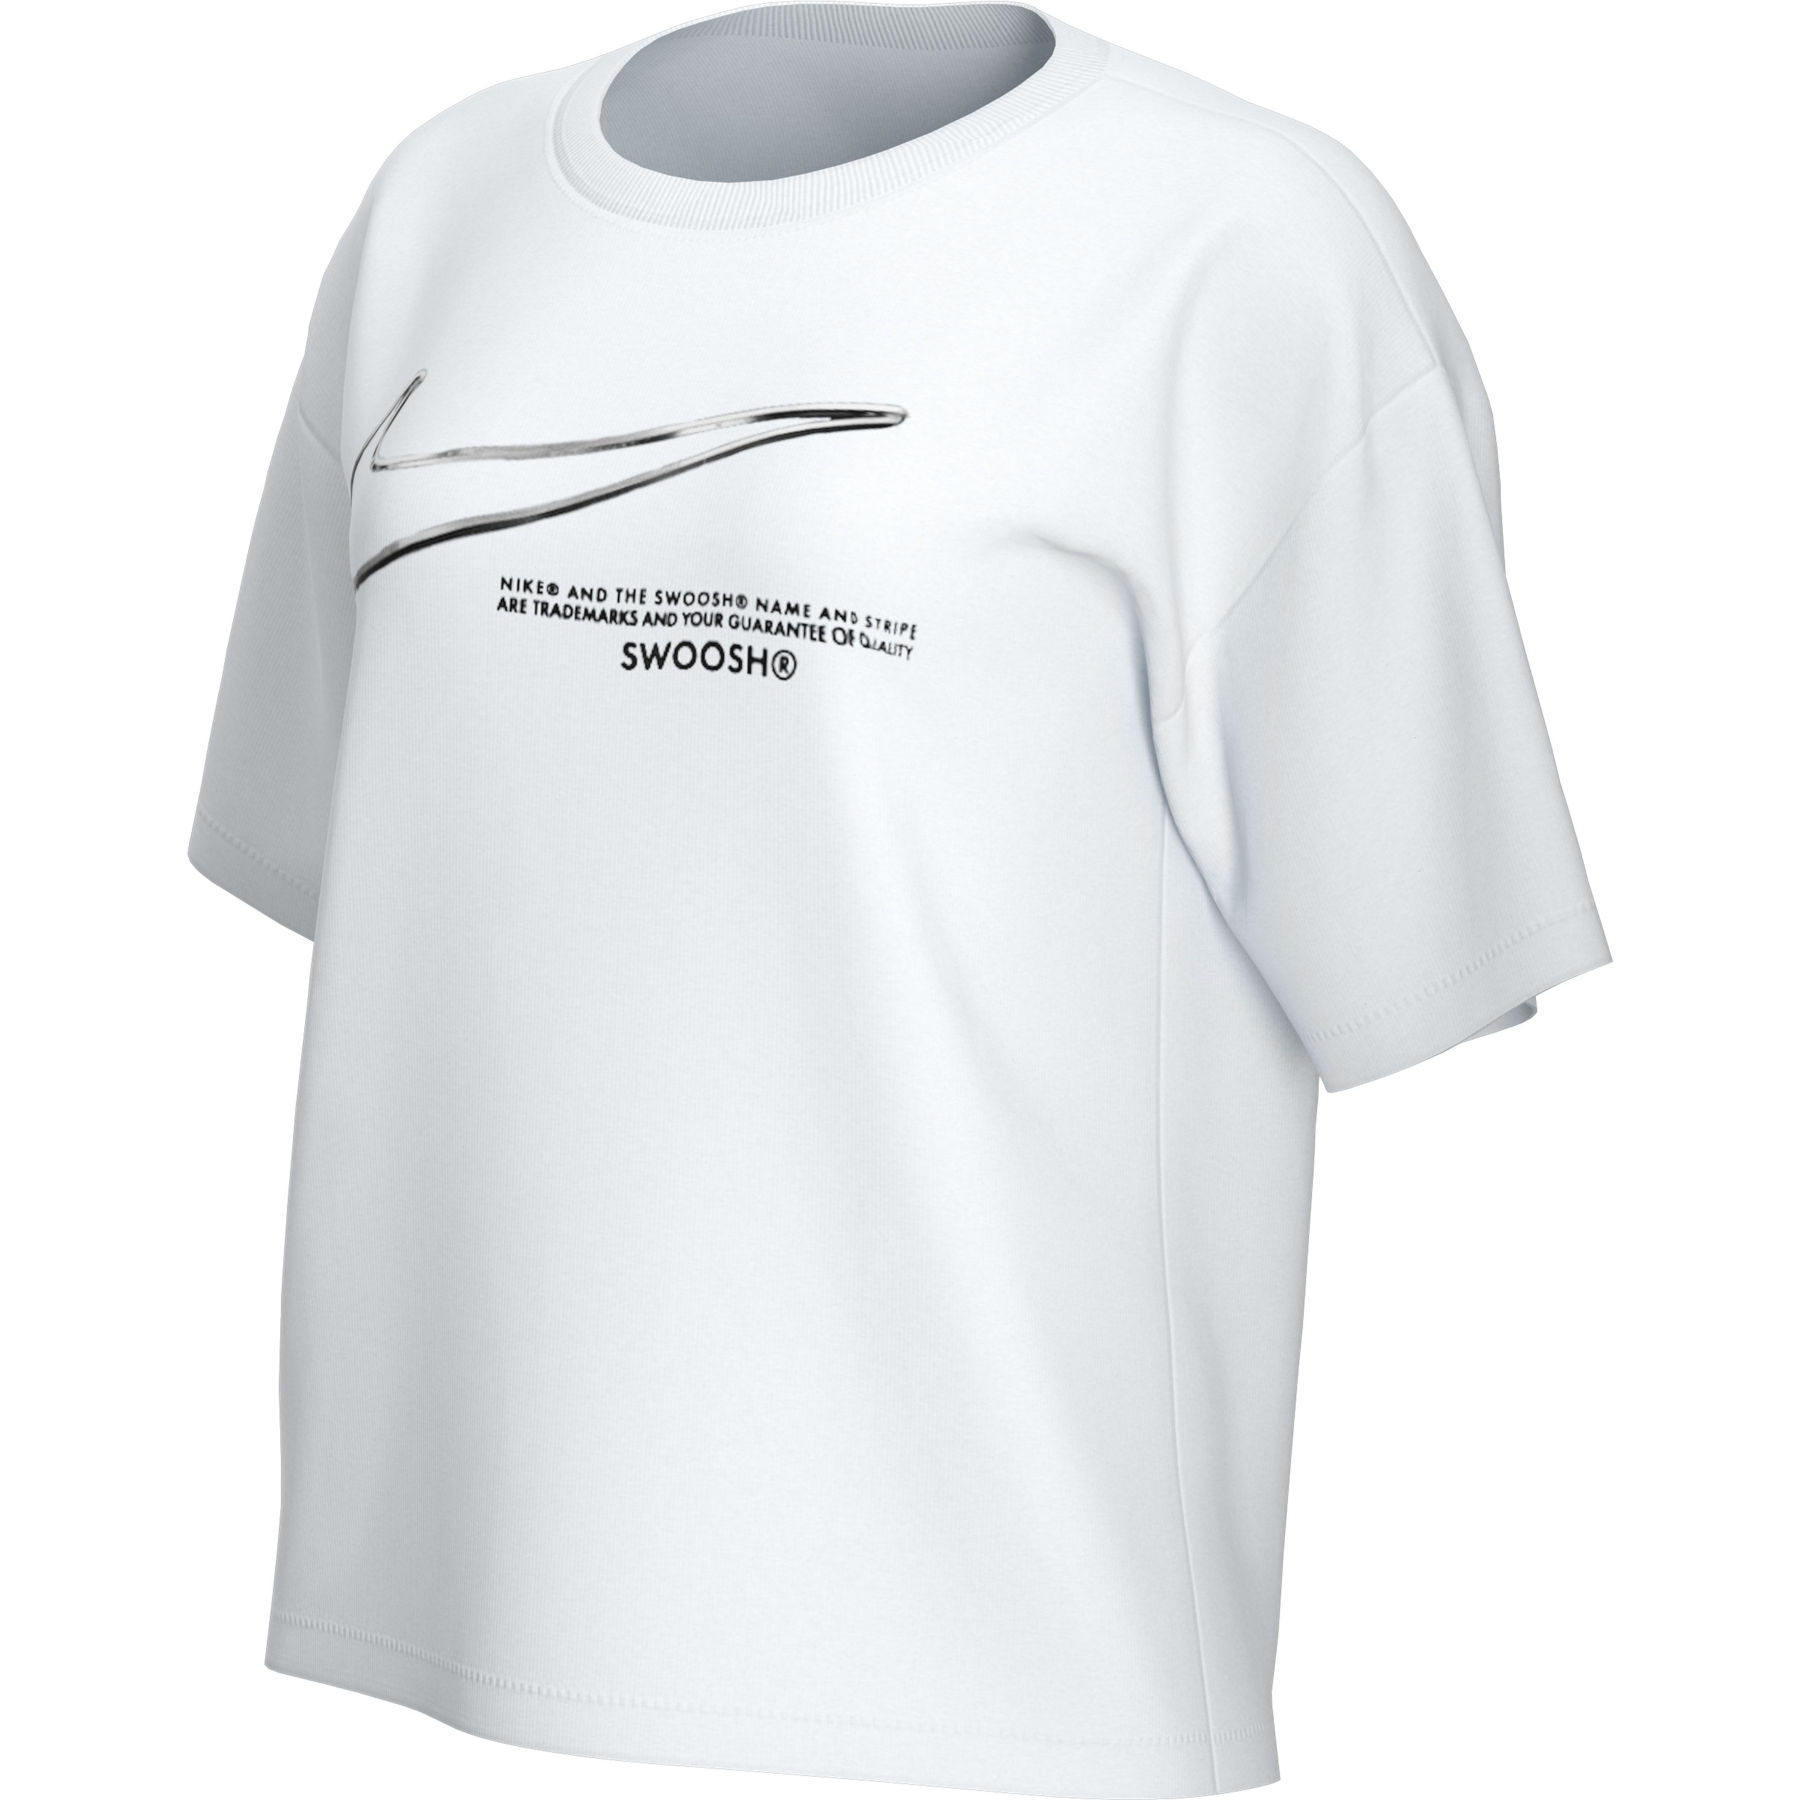 Produktbild von Nike Sportswear Swoosh Damen T-Shirt - white DB9811-100